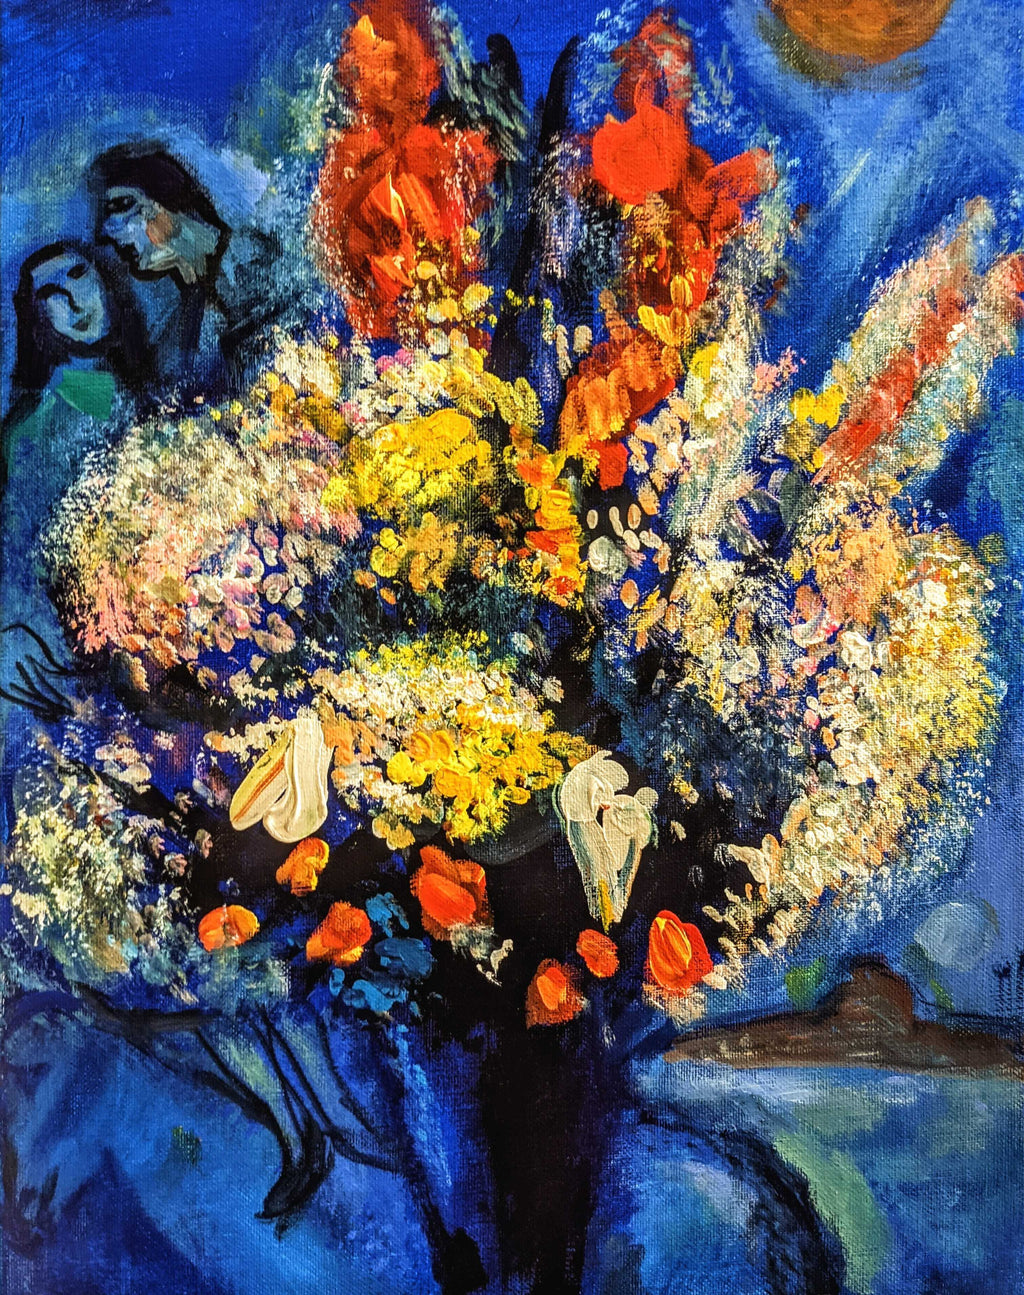 【上野/根津】3月16日 (土) 13:00-16:00 | マルク・シャガール | 天に捧げる花束 (Bouquet Offered to the Sky by Marc Chagall at Ueno/Nezu)